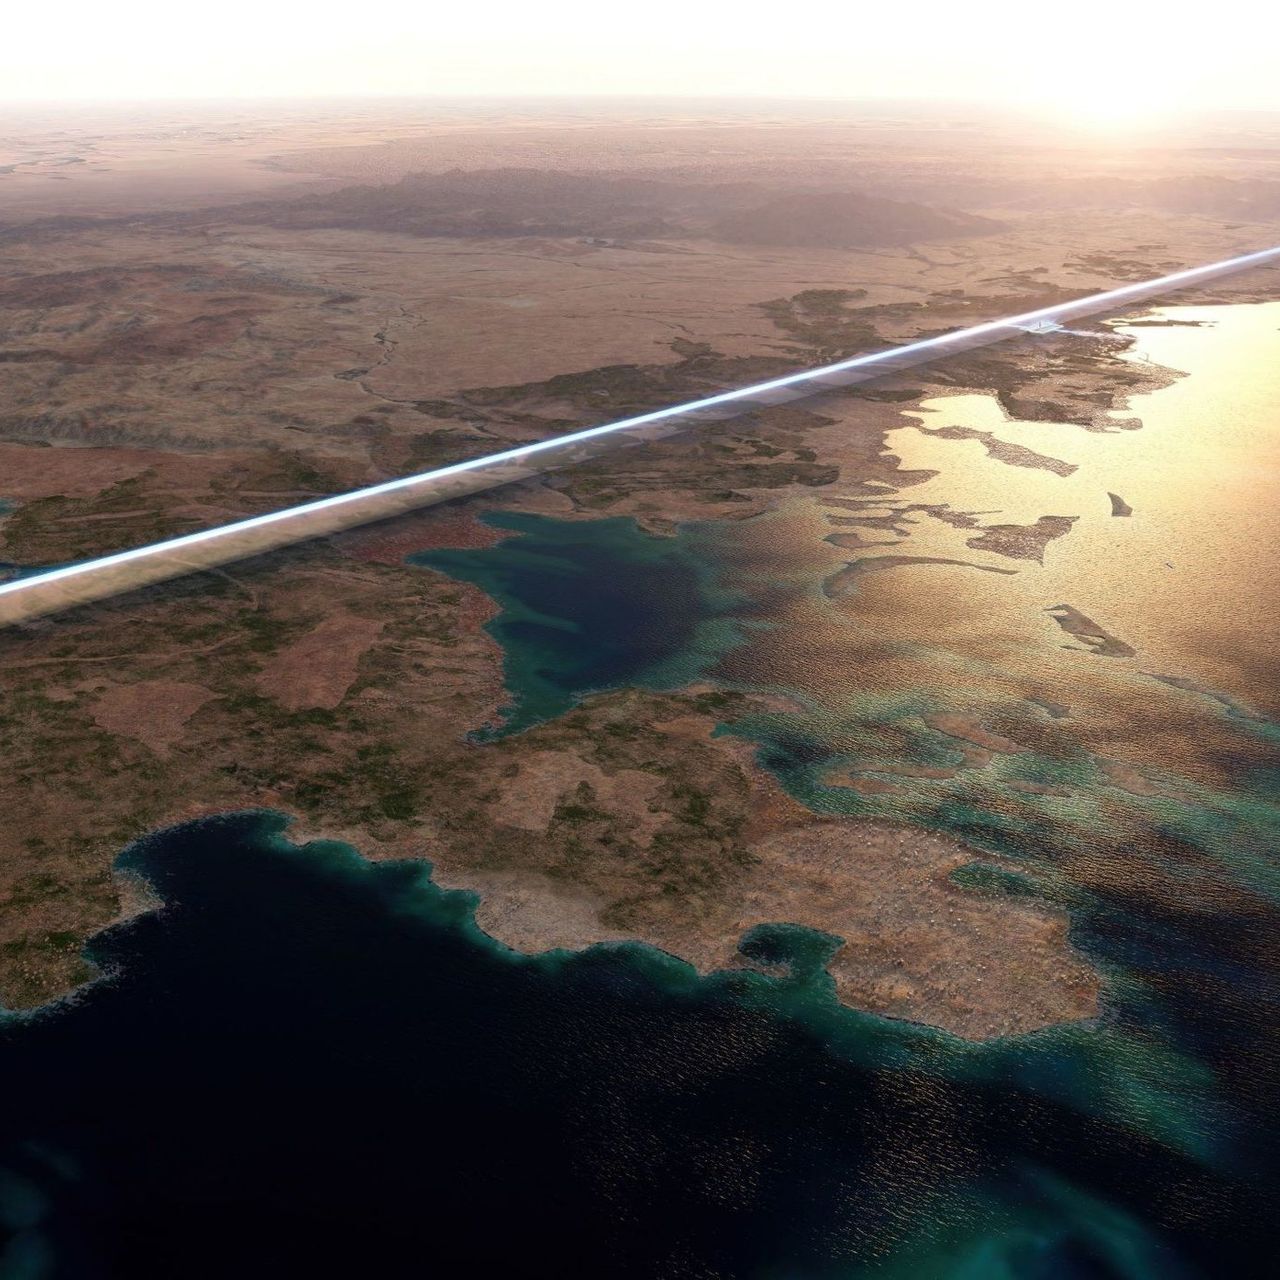 170km 길이의 "The Line"은 세계 최초의 선형 도시가 될 것입니다.